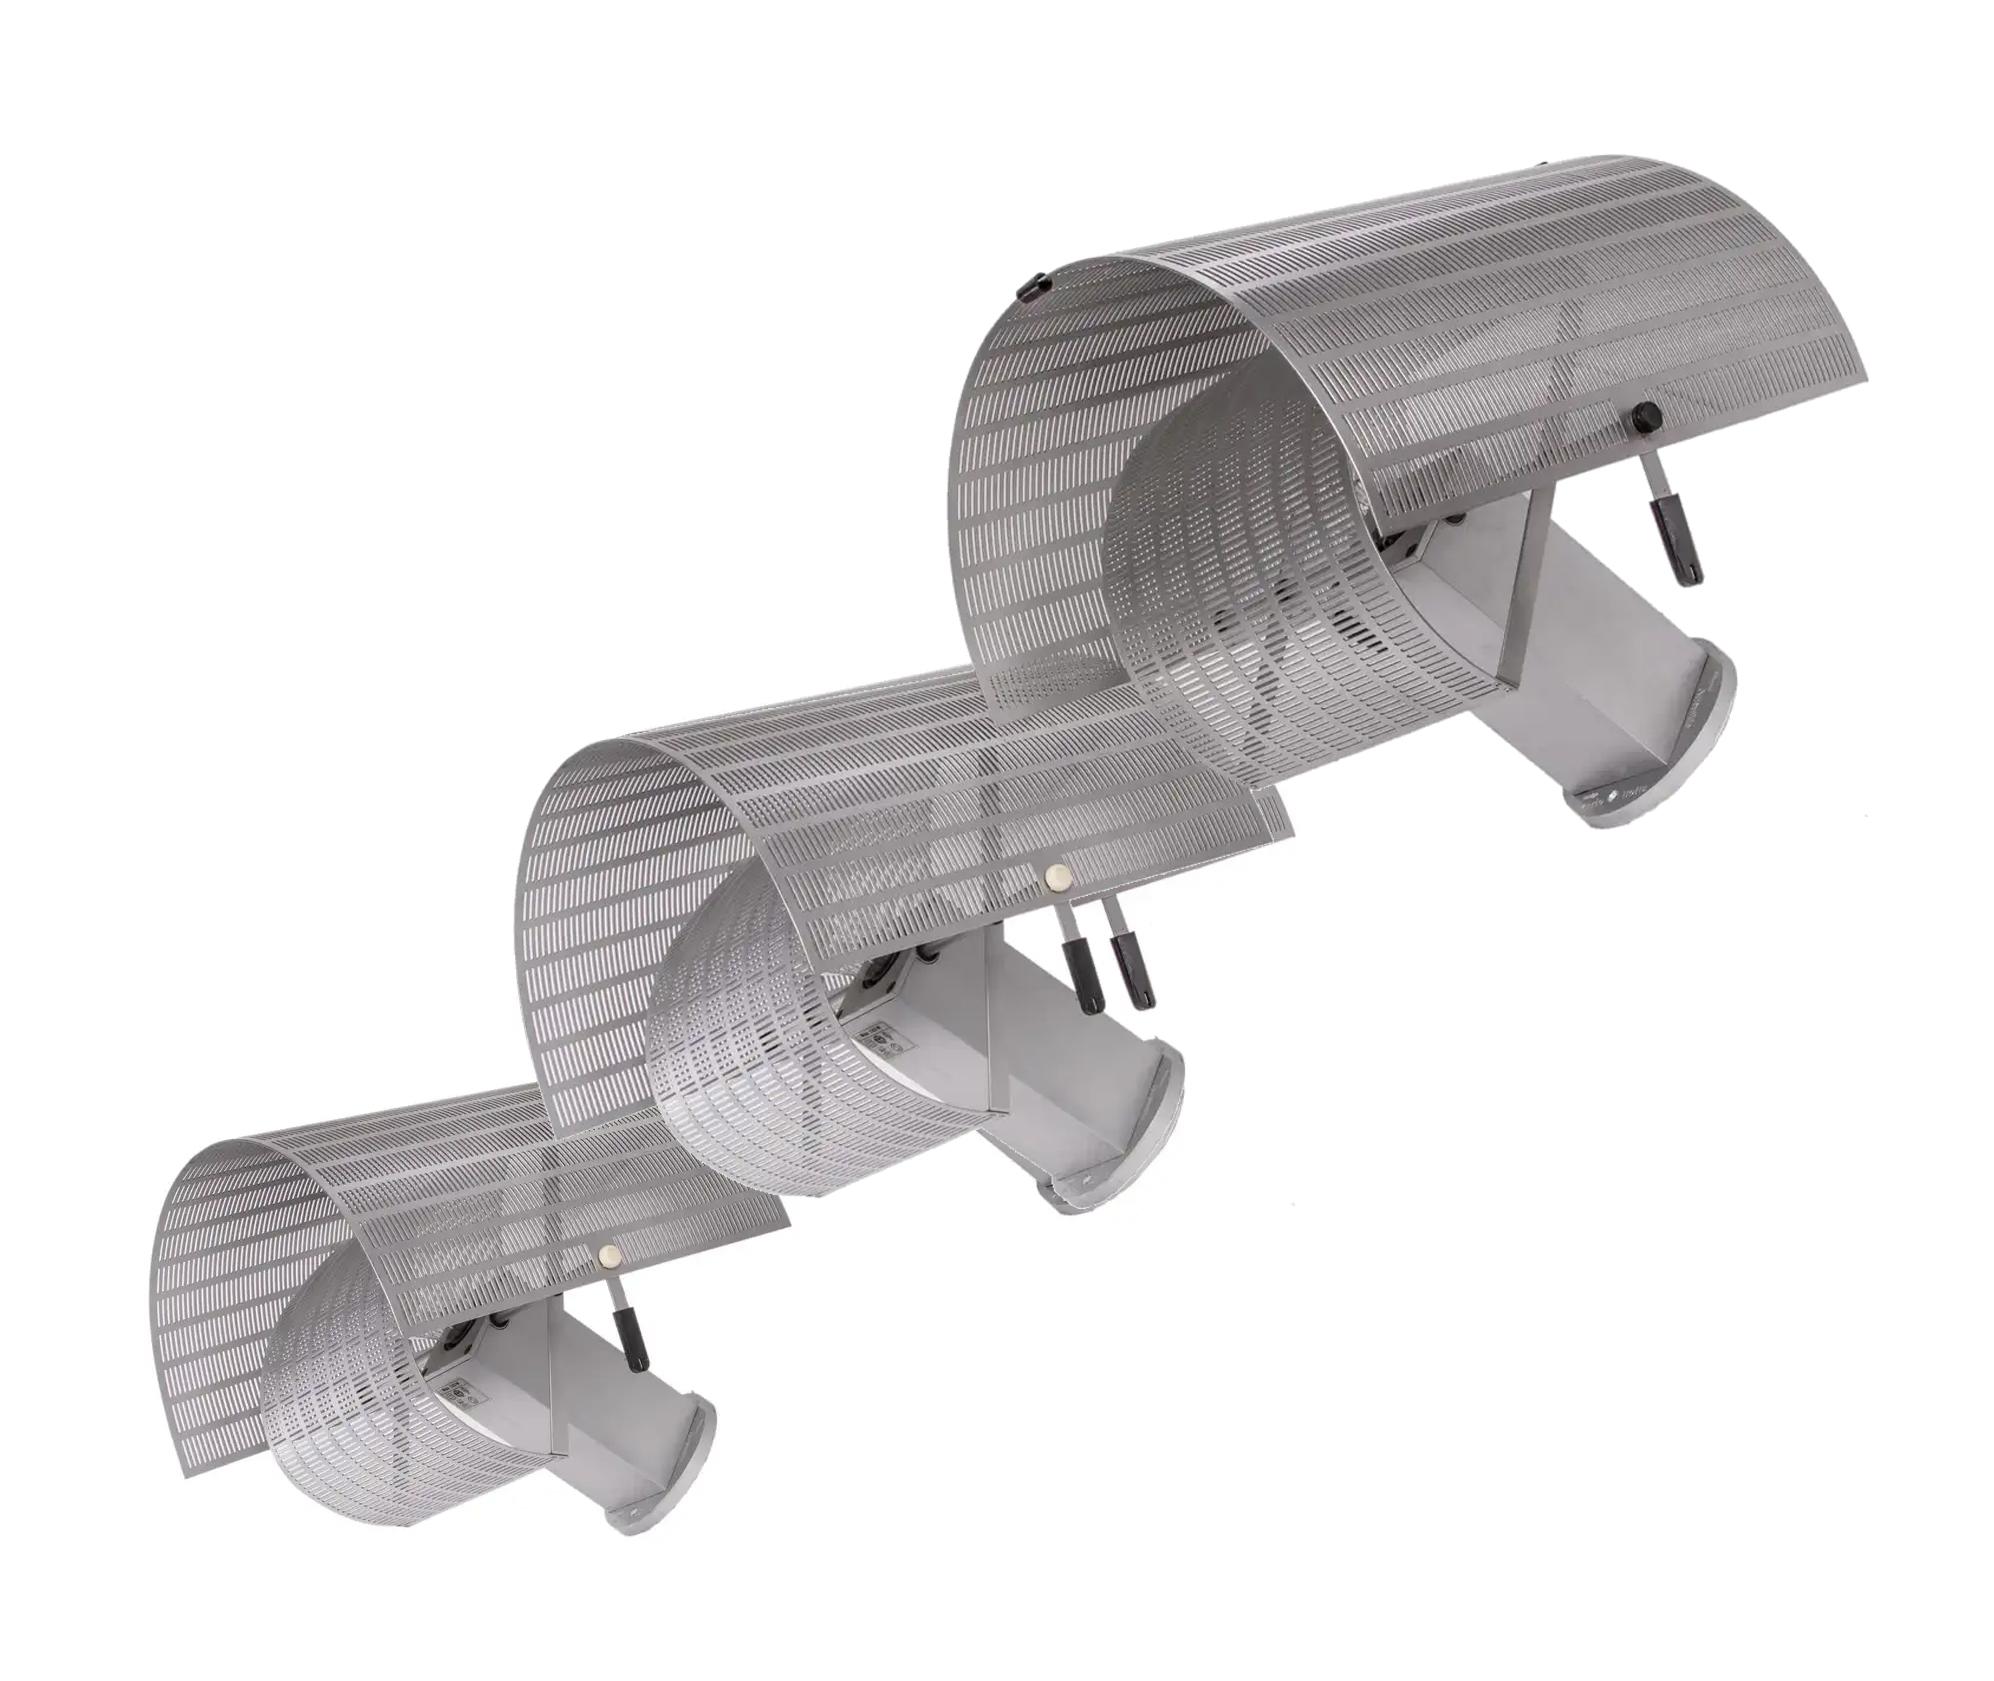 Elegant ensemble de 3 appliques Artemide Shogun Parete conçues par Mario Botta pour Artemide, Milano, Italie dans les années 1980. Marqué sur le cadre. Mario Botta est un architecte et designer suisse postmoderne, réputé pour ses formes géométriques